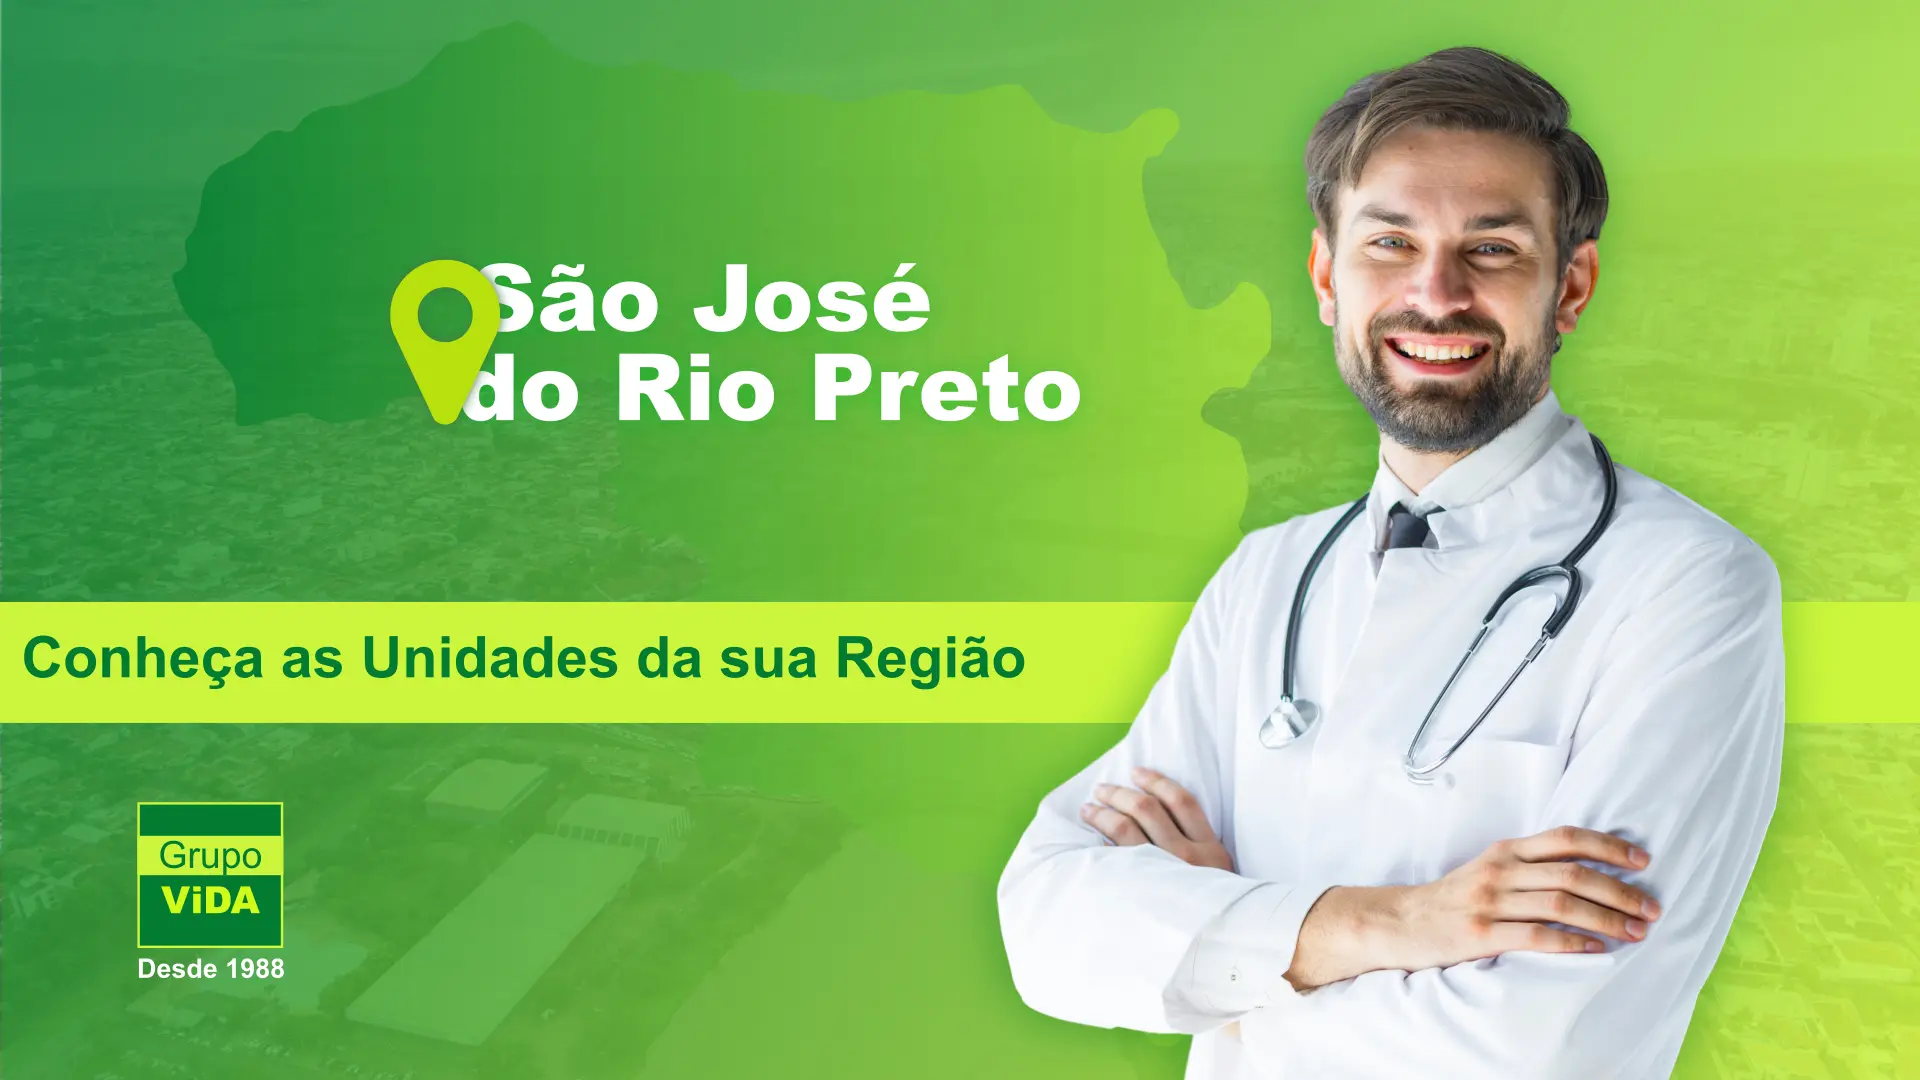 Grupo Vida Região de São José do Rio Preto